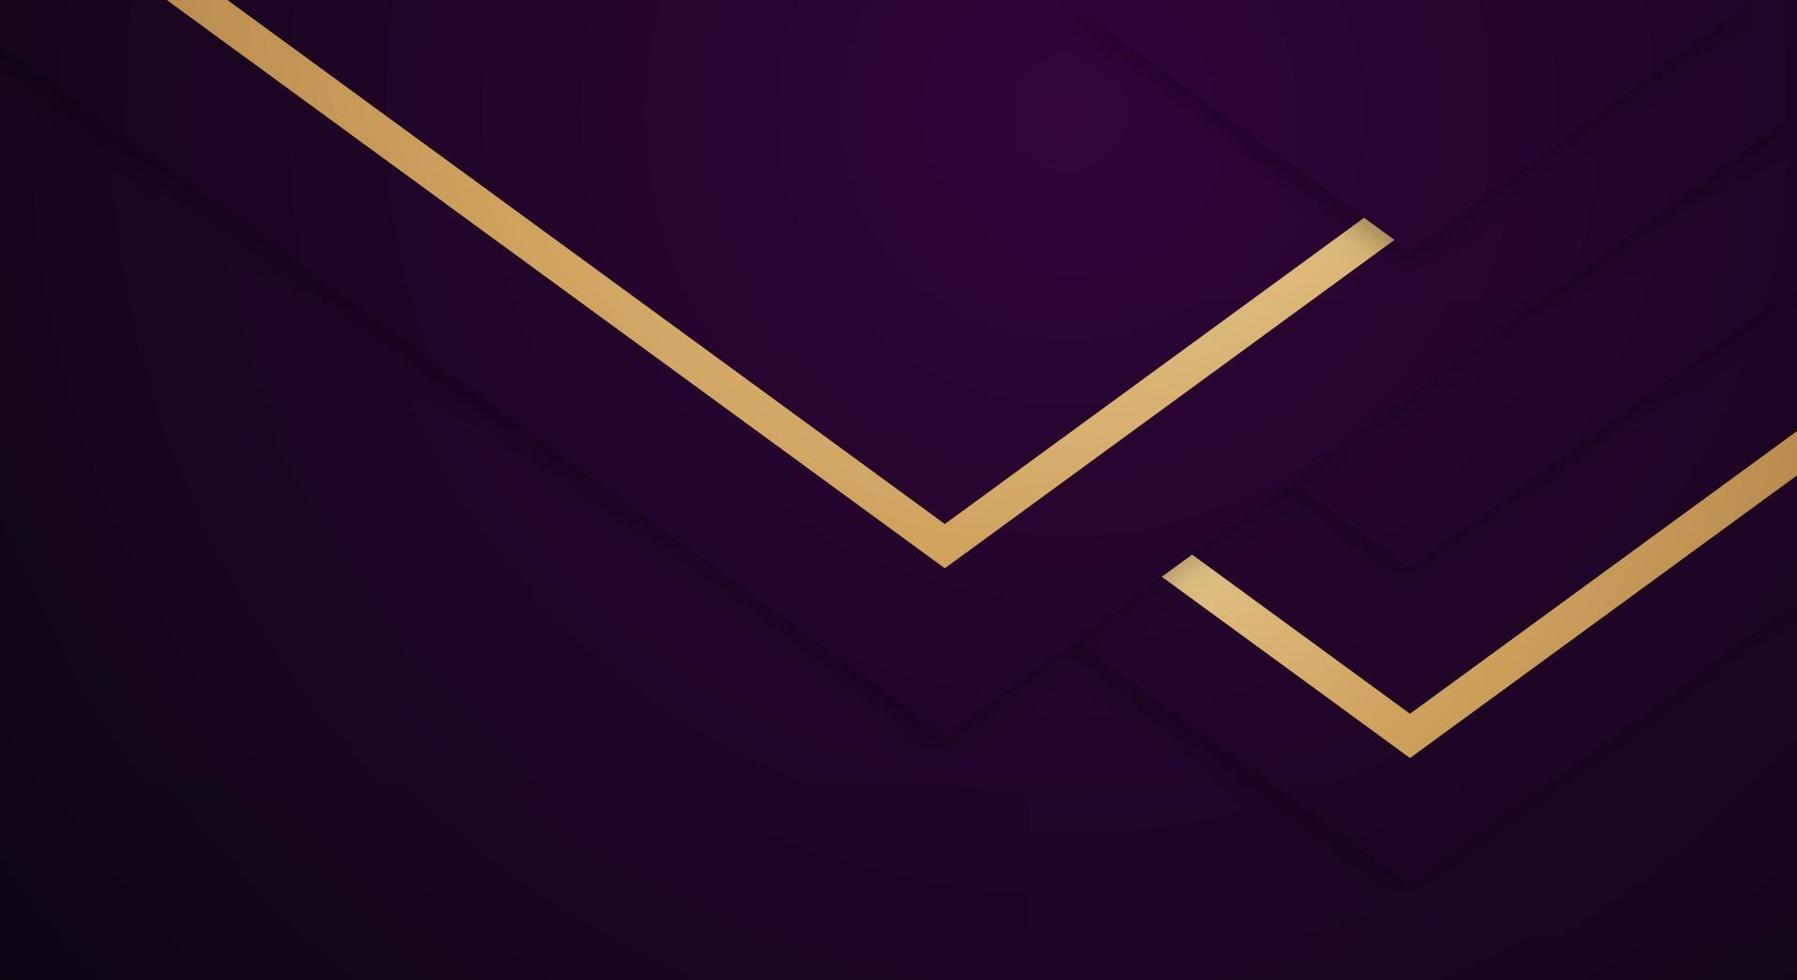 capas superpuestas geométricas púrpura oscuro premium abstractas con rayas líneas doradas fondo de lujo vector